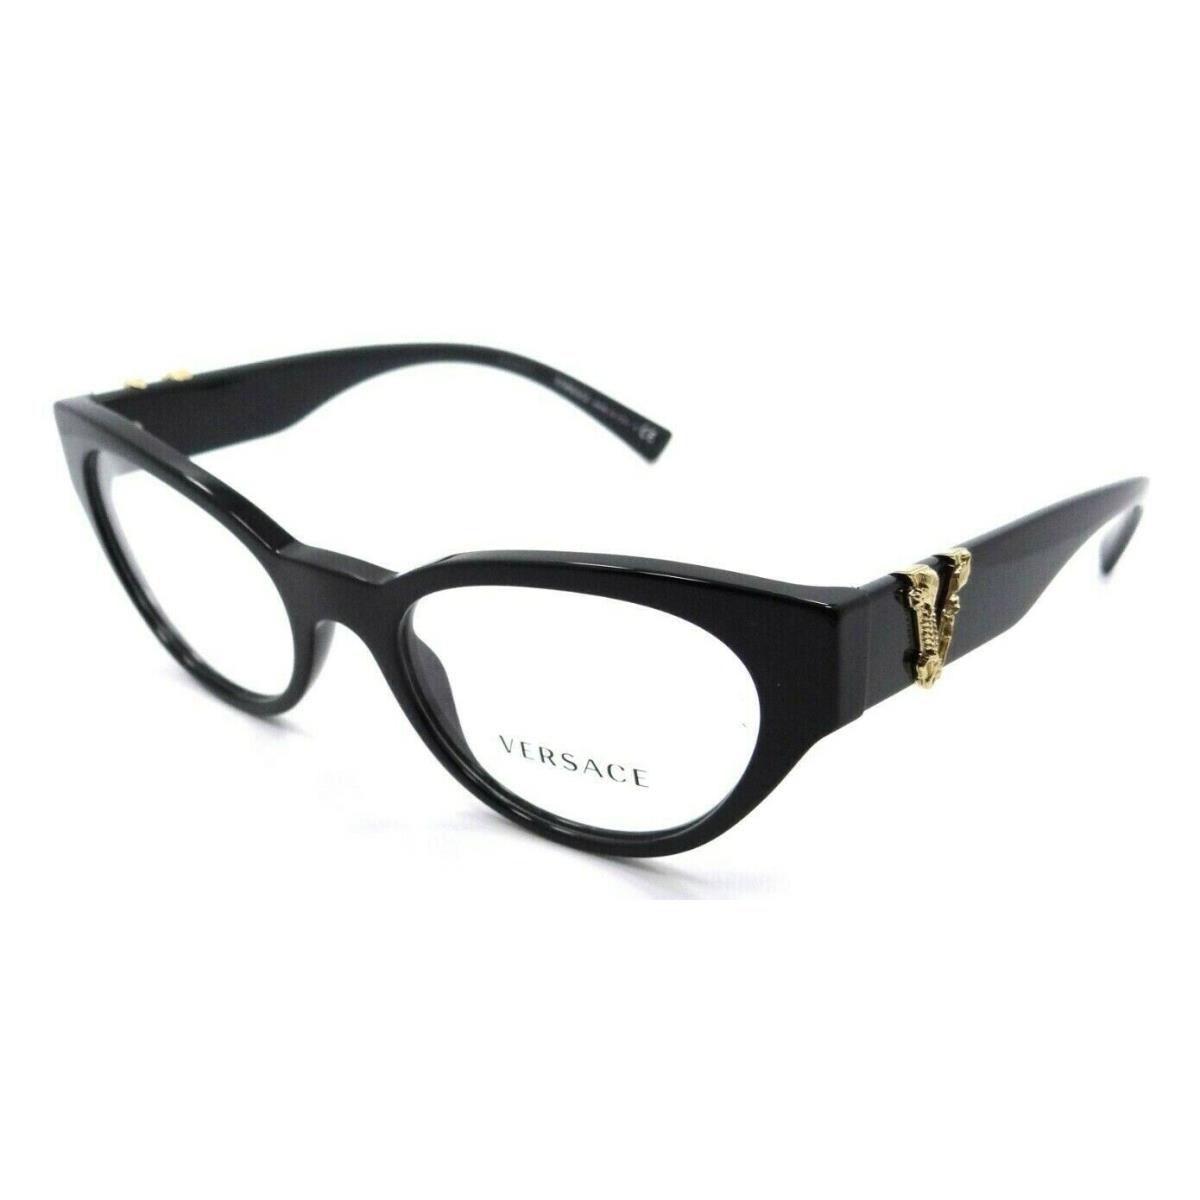 Versace Eyeglasses Frames VE 3282 GB1 51-19-140 Black Made in Italy